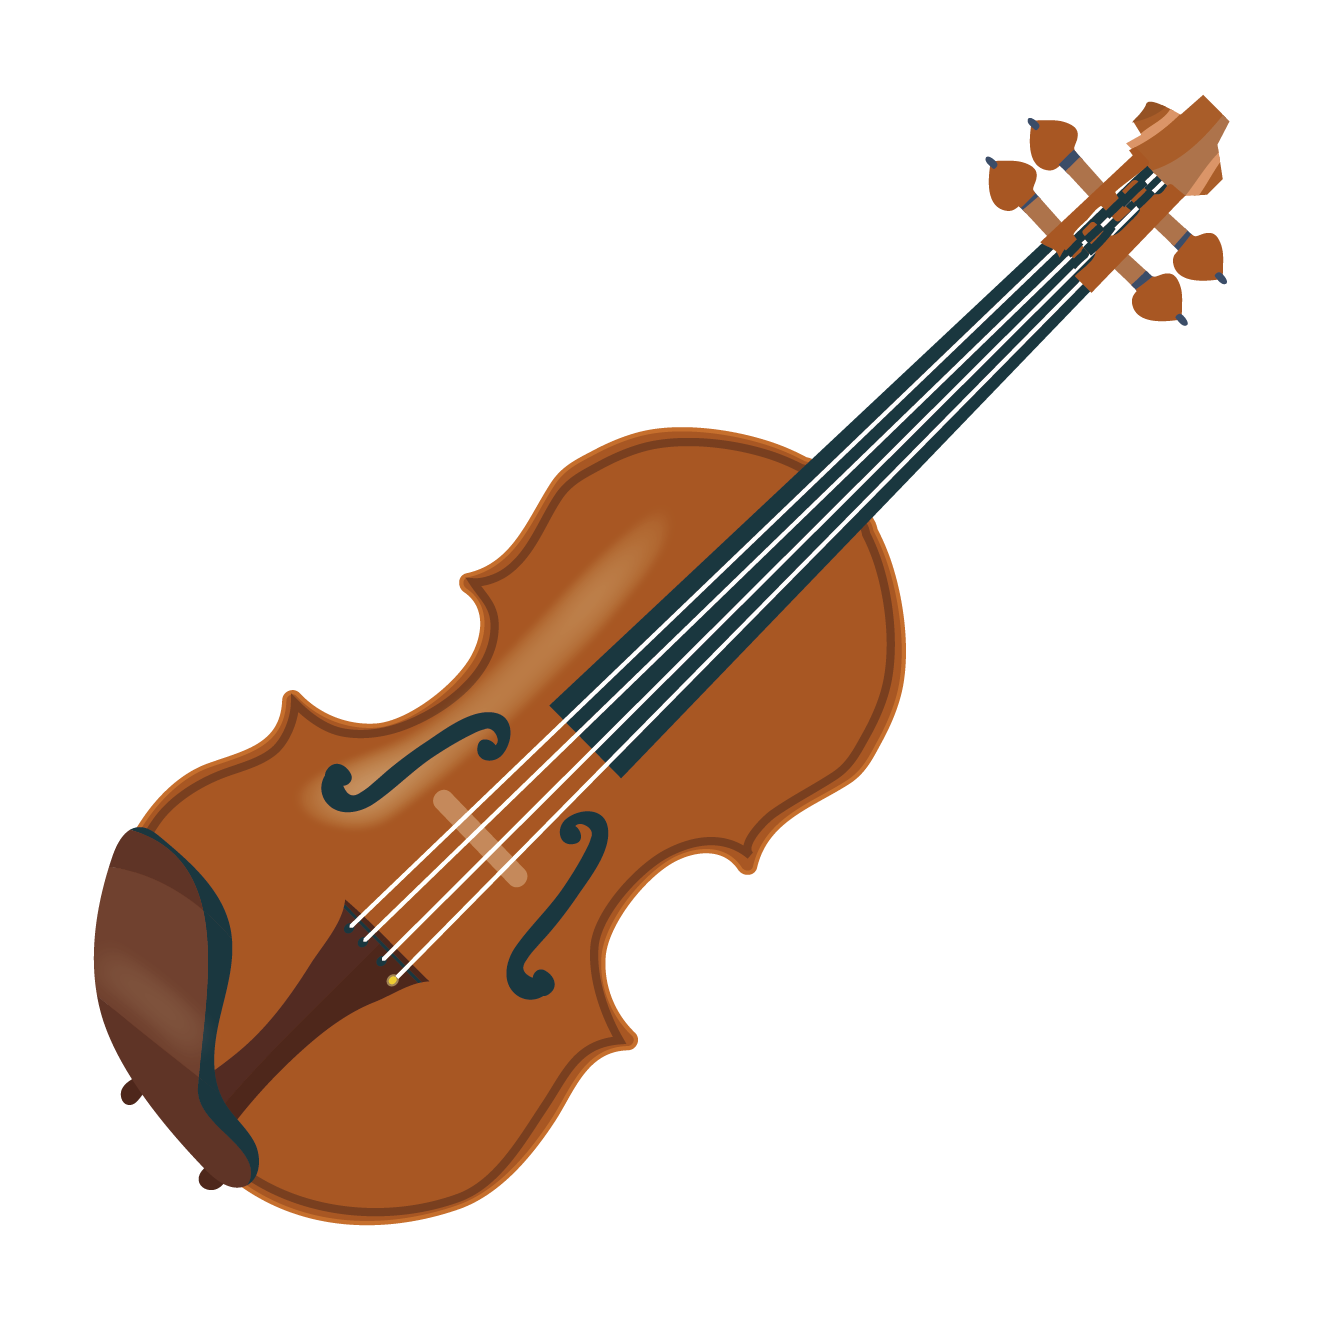 ロイヤリティフリー イラスト バイオリン かわいい かっこいい無料イラスト素材集 イラストイメージ